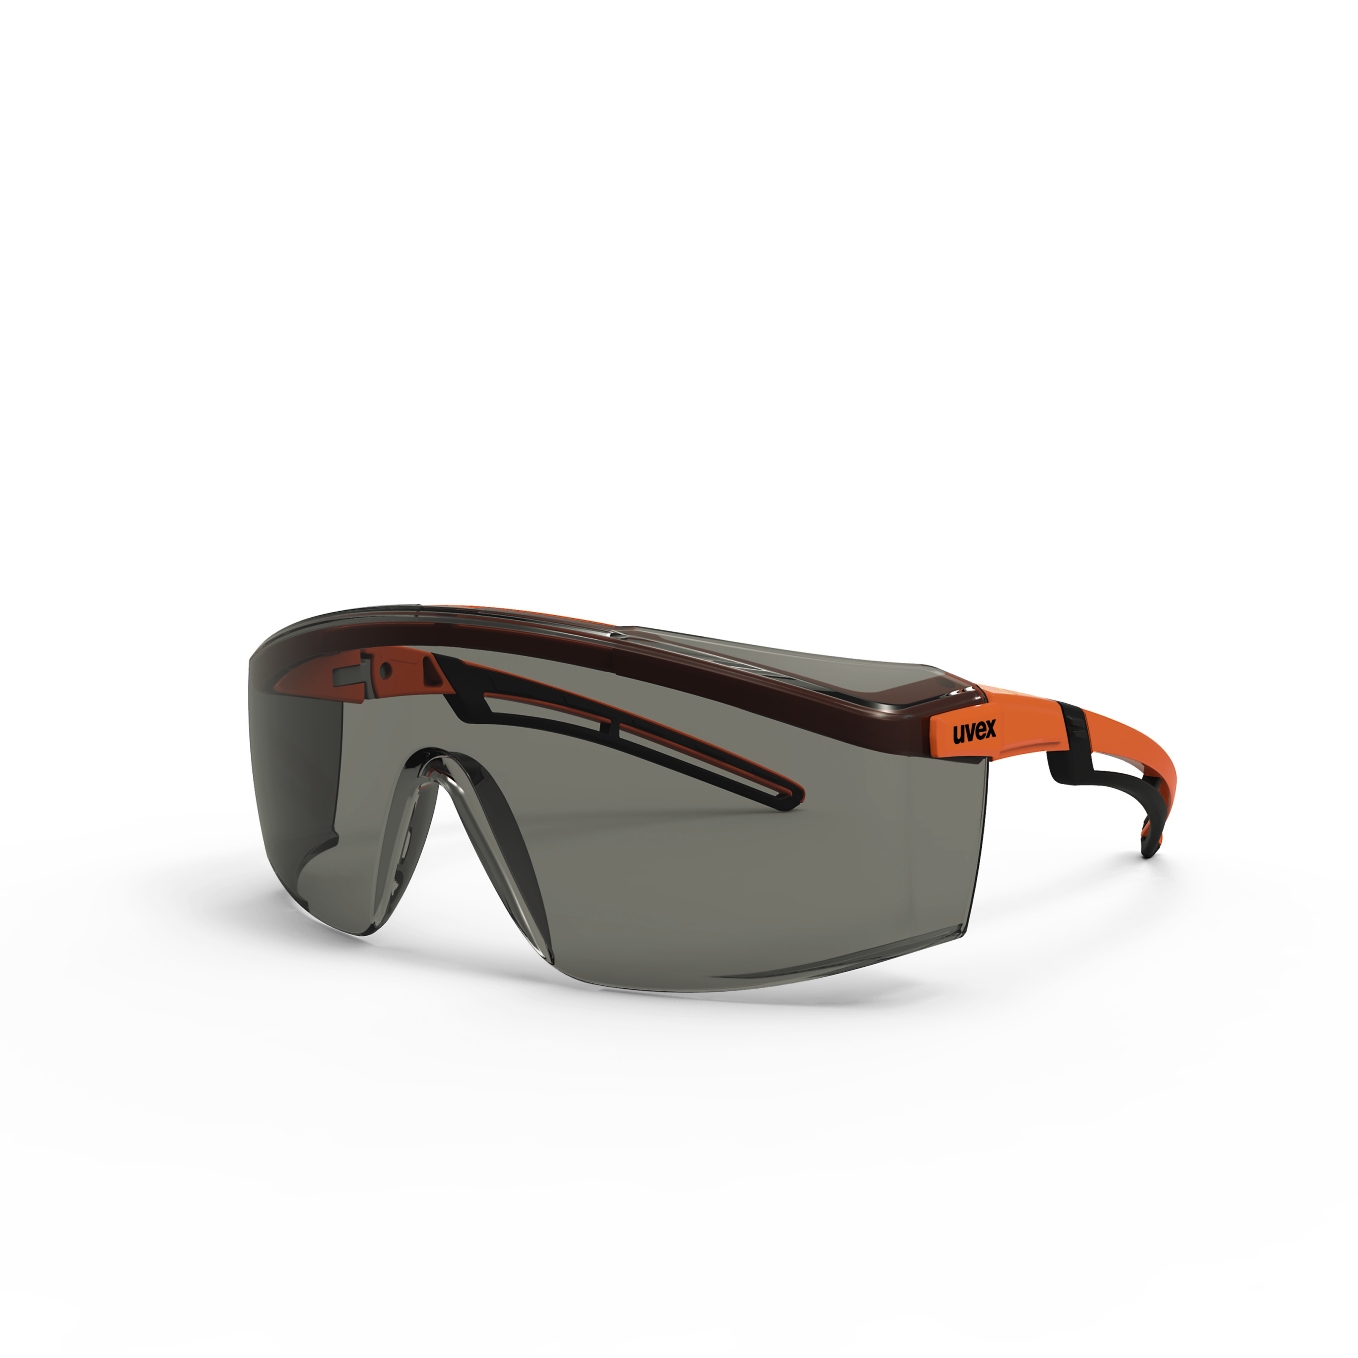 Brýle uvex astrospec 2.0 Kód produktu: 9164246, Provedení zorníku: PC šedý 23%/UV 5-2,5, SV. excellence, rám neonově oranžová/černá